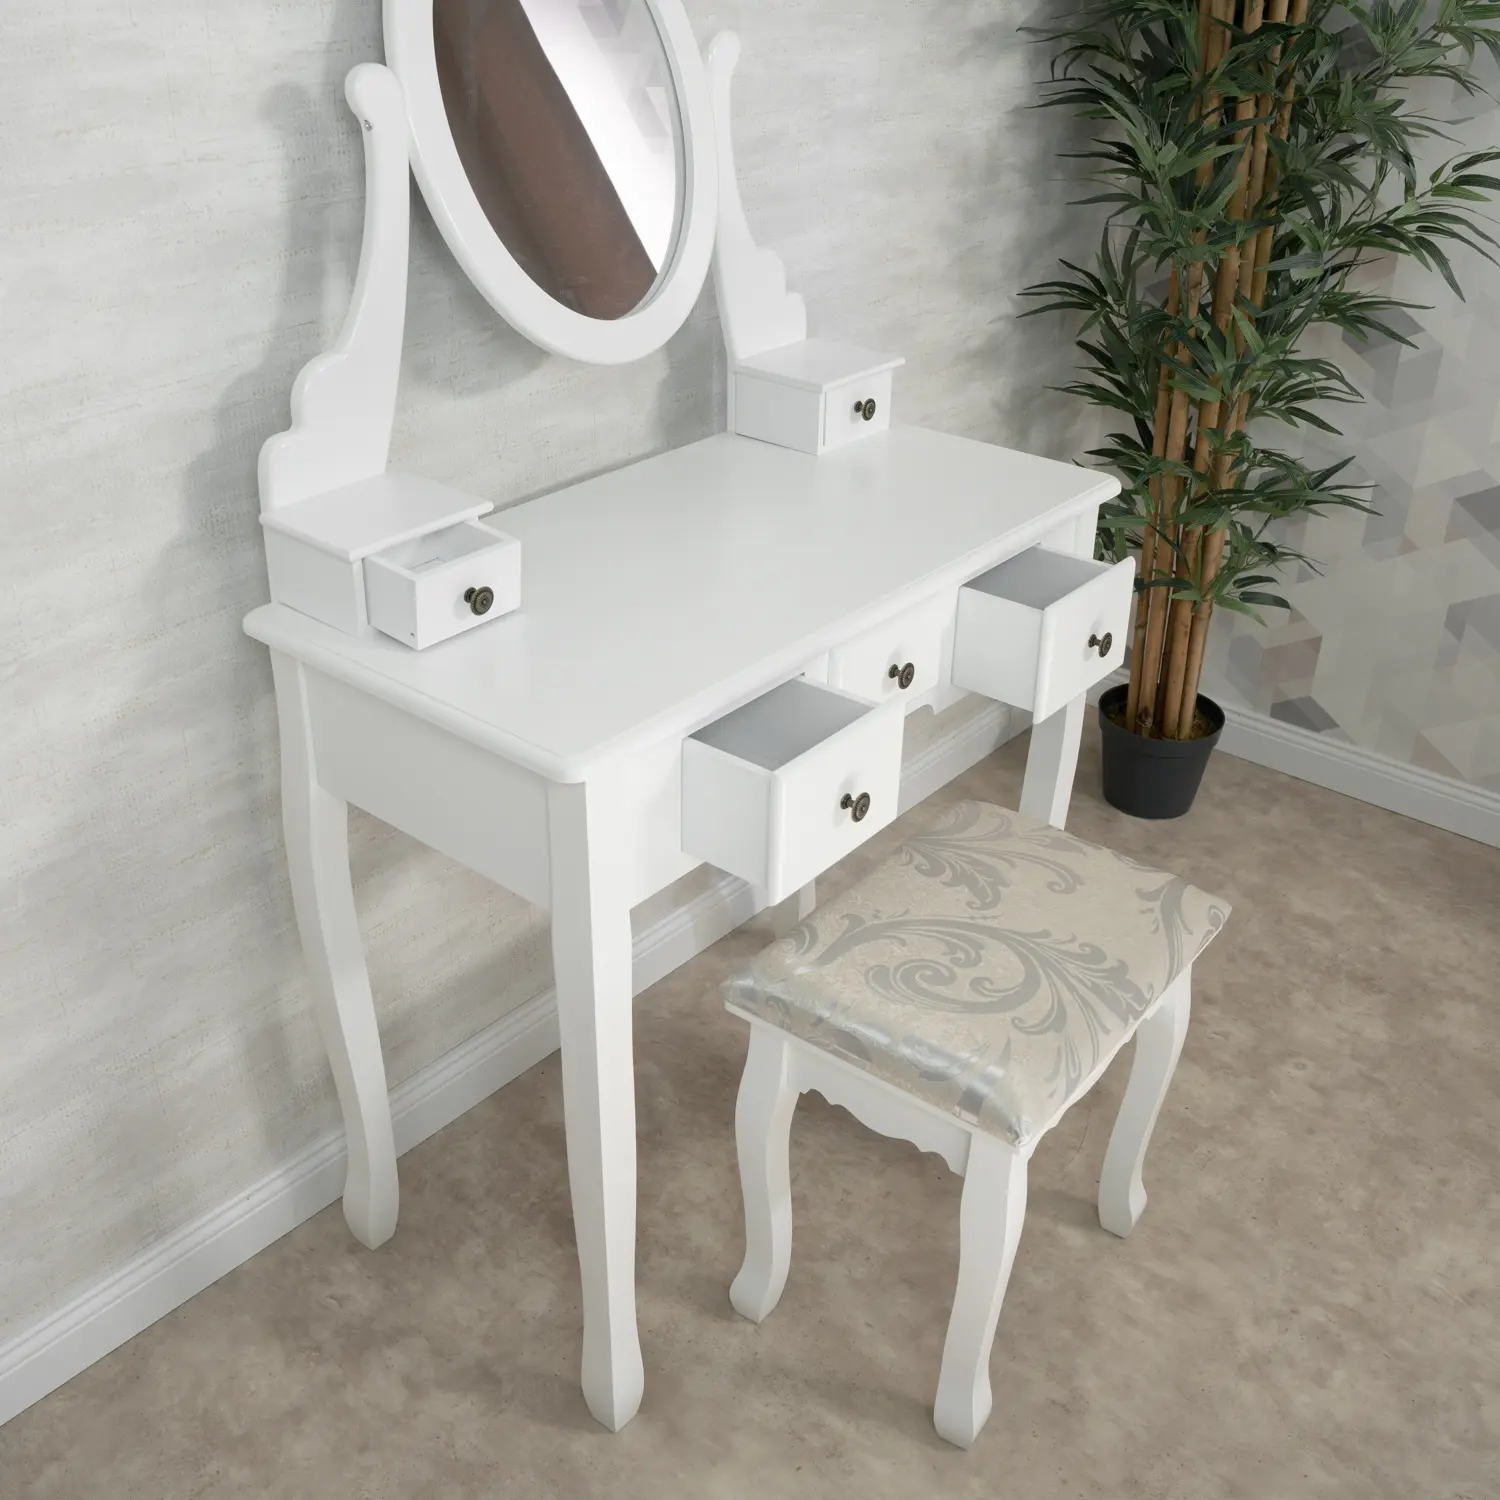 Öltözködőasztal, fésülködő asztal tükörrel, székkel (STORE11 FS-01)